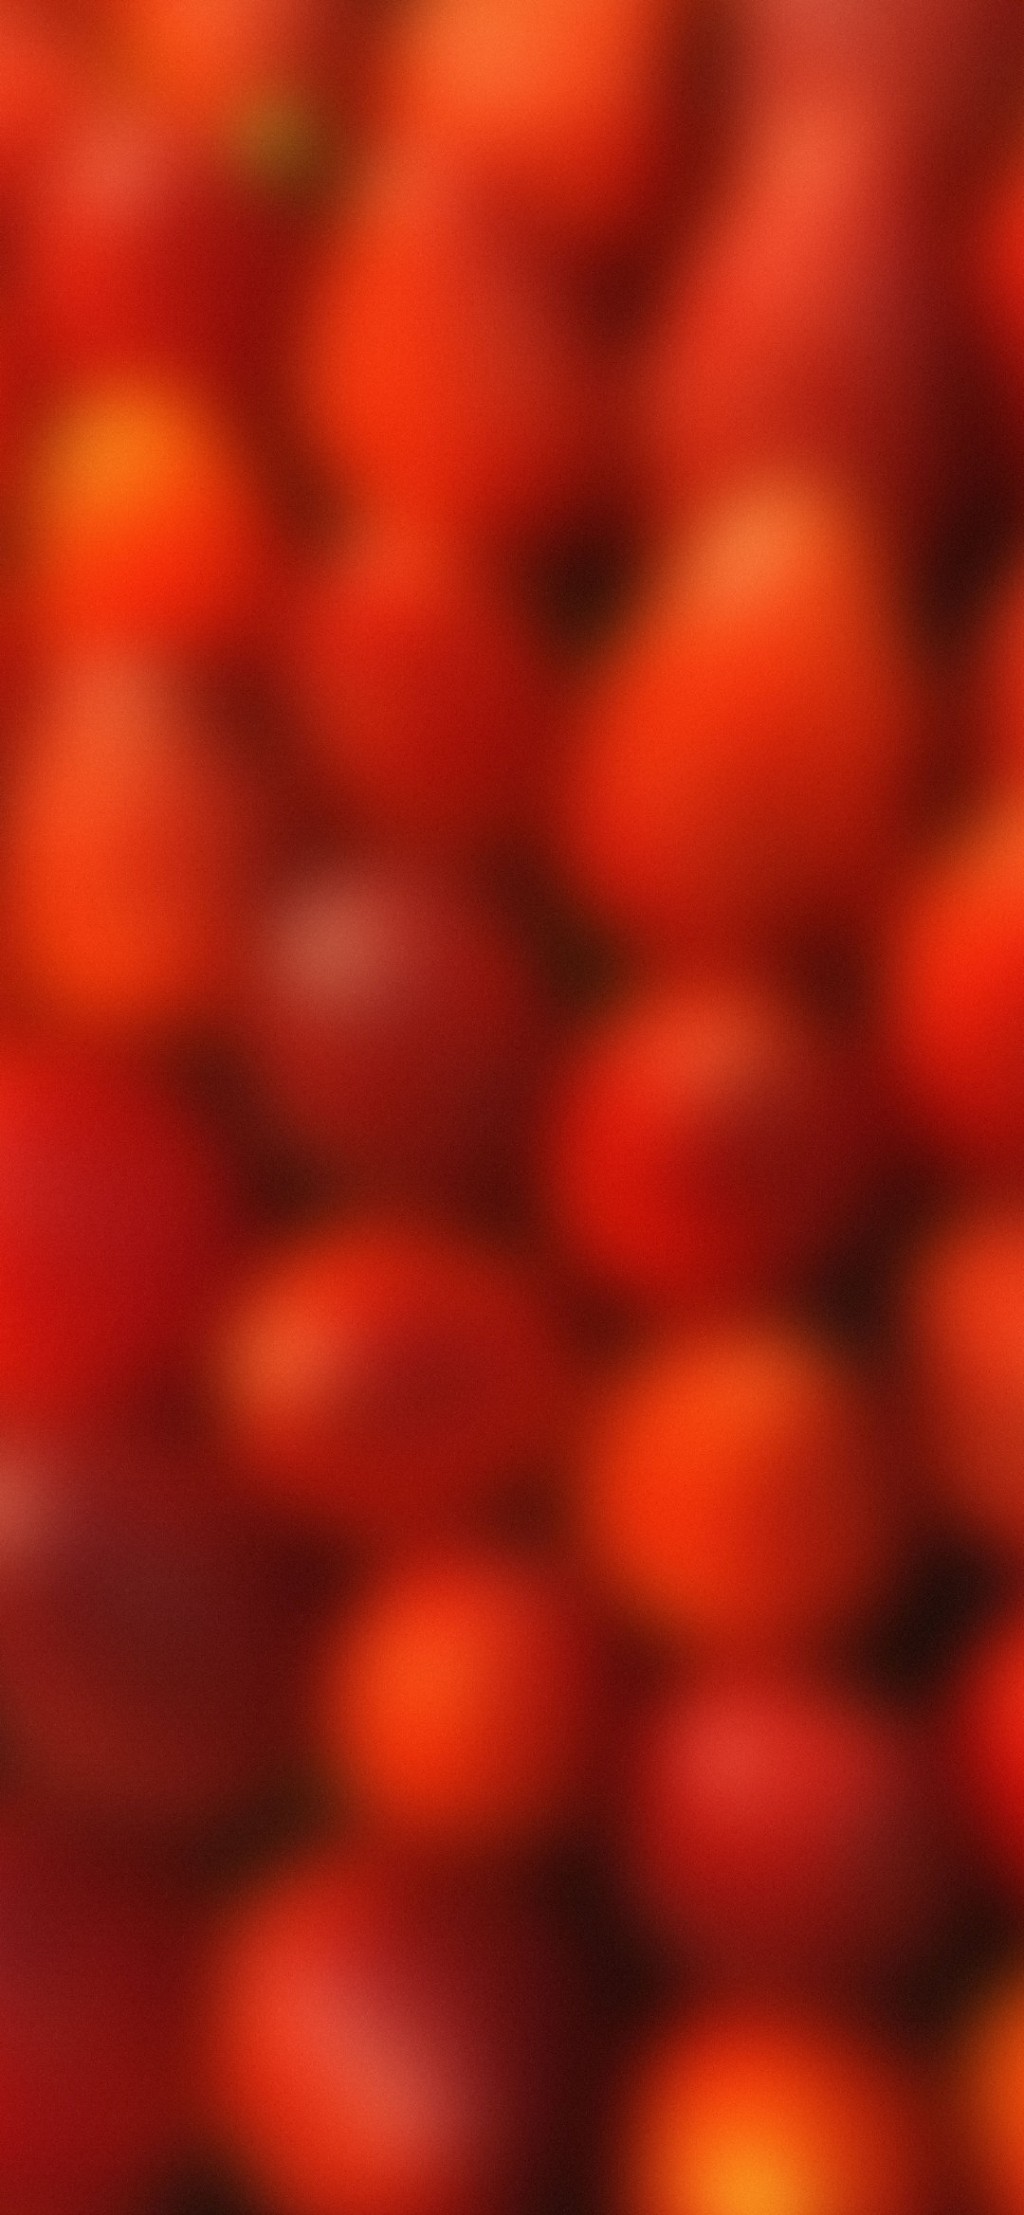 水果派系列手机壁纸